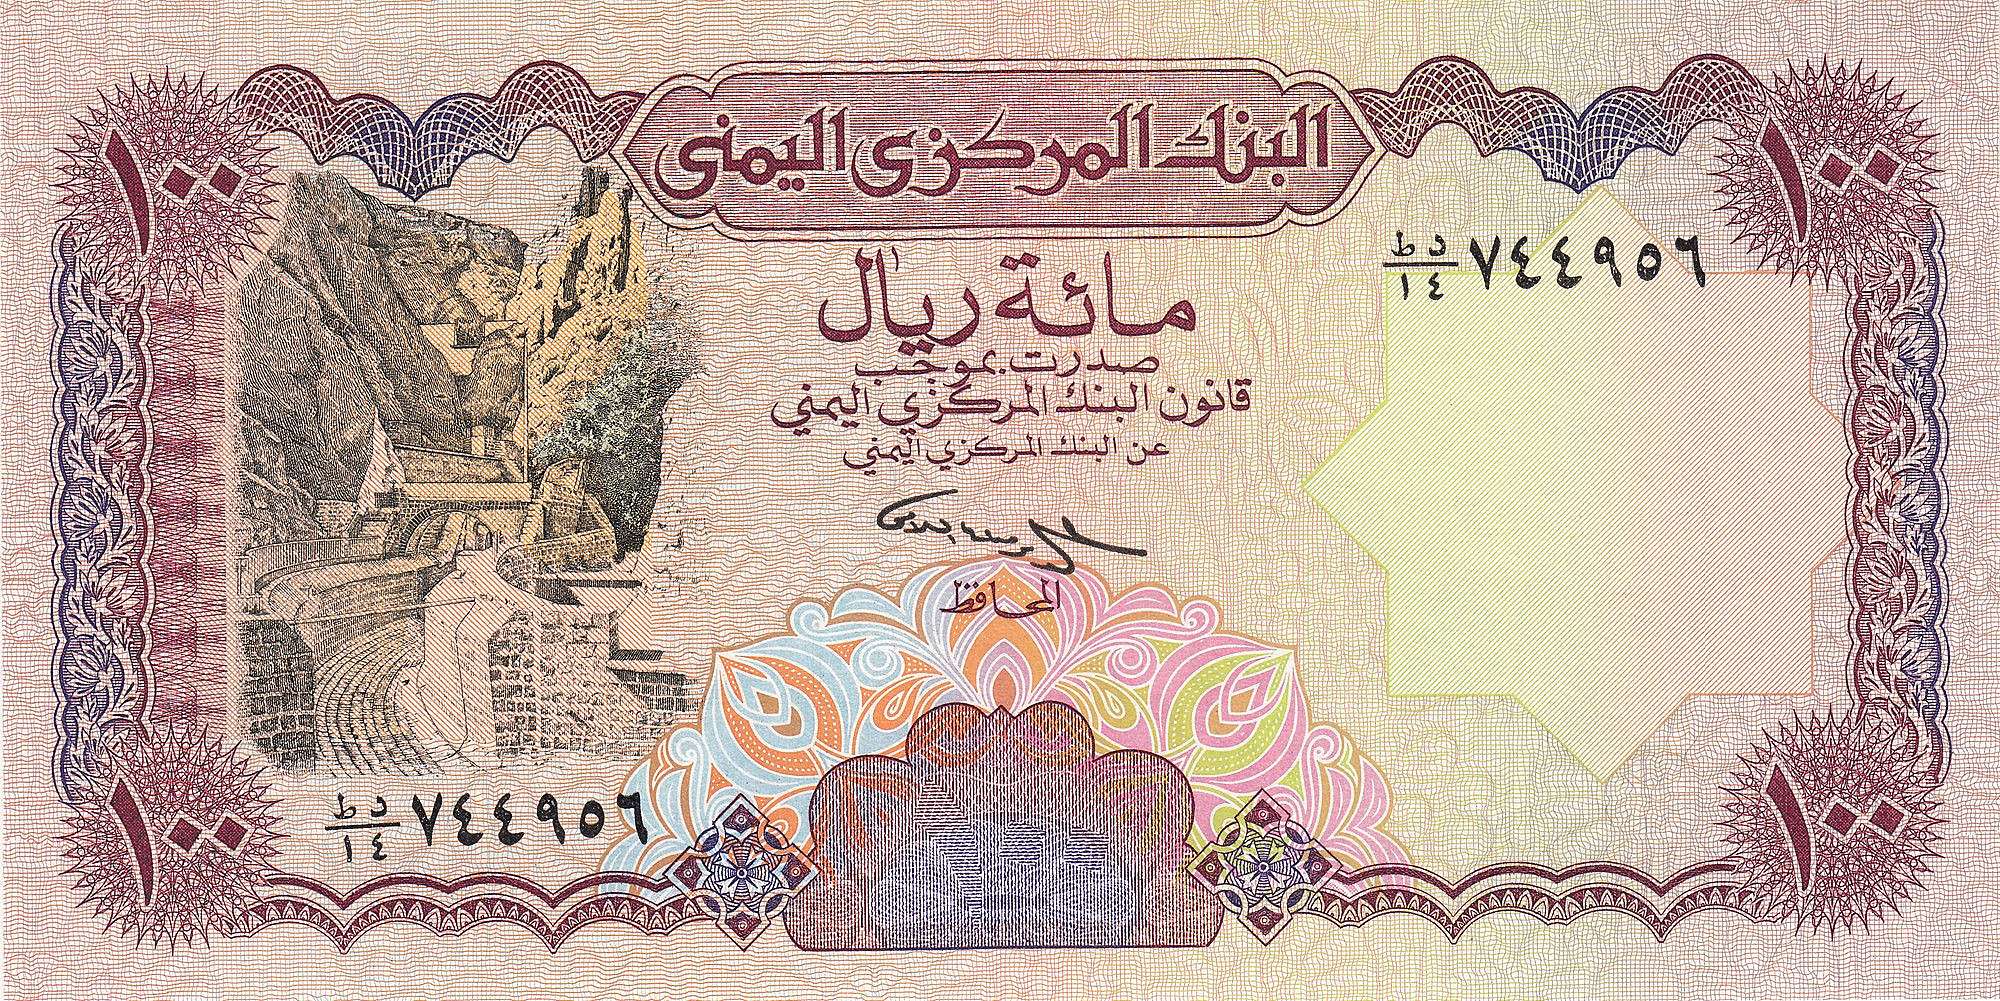 الريال اليمني يفاجئ الجميع هذه اللحظة بسعر متسارع غير متوقع امام العملة الاجنبية في صنعاء وعدن ..السعر الآن